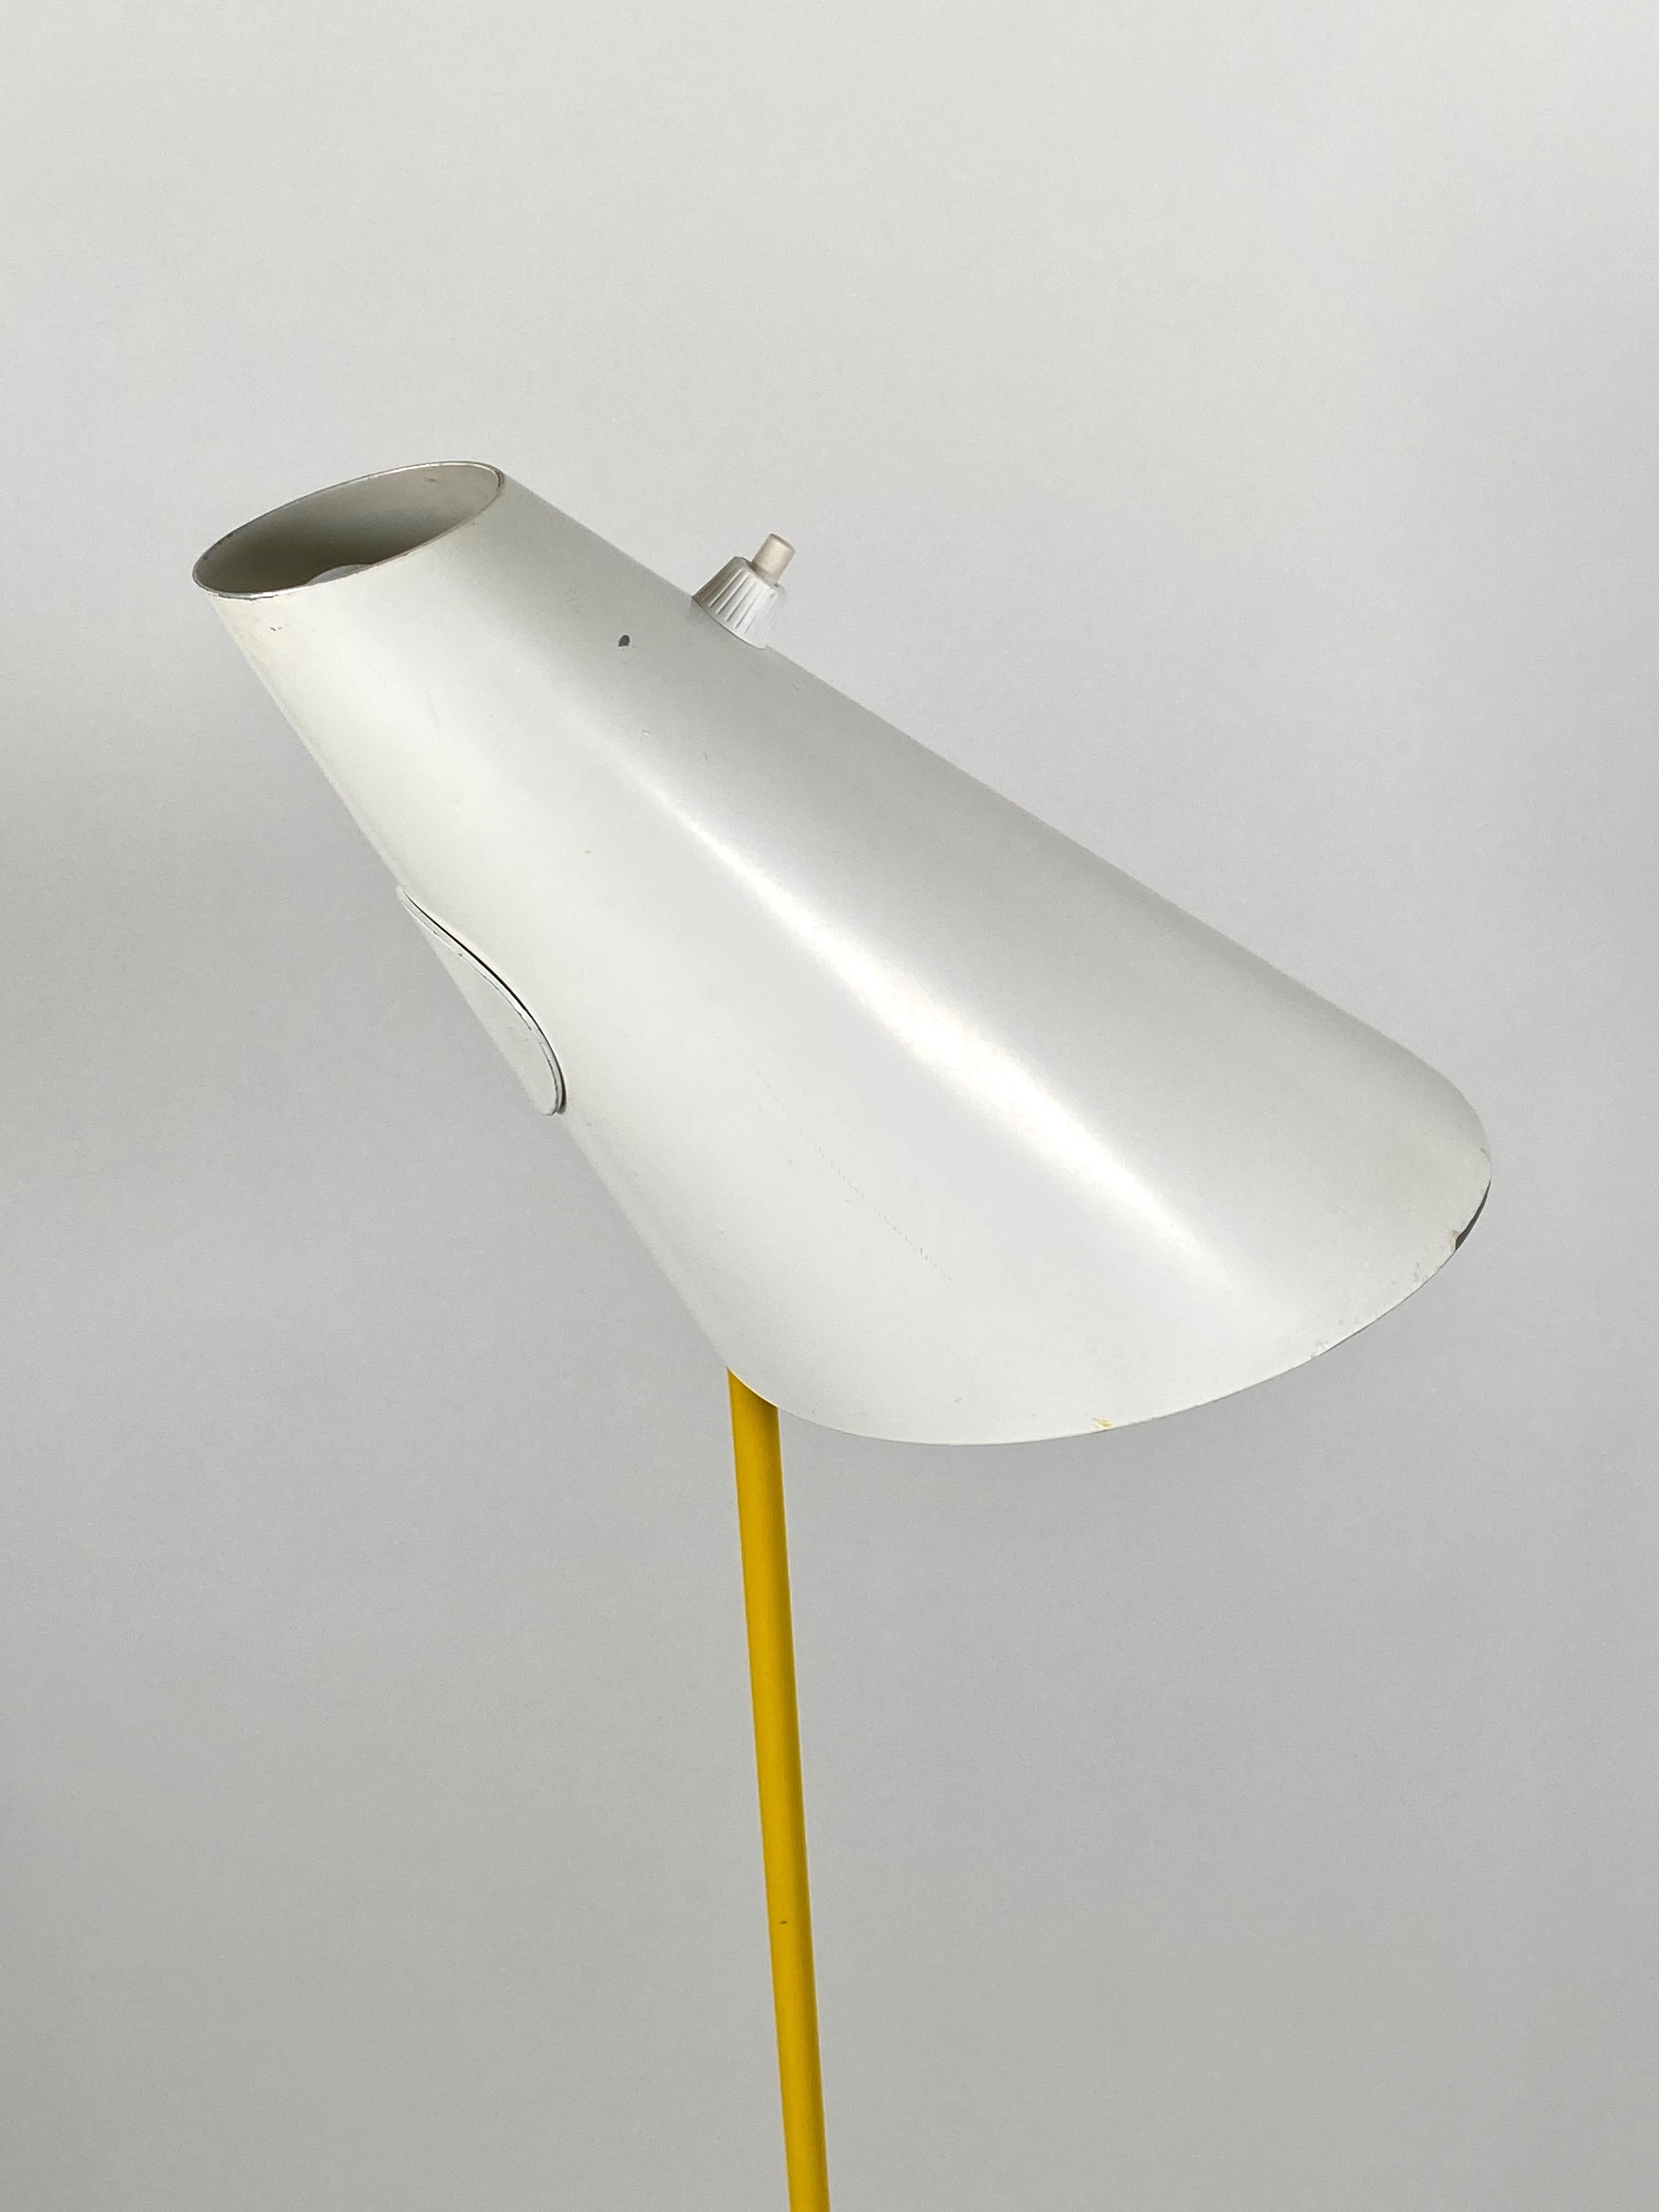 Mid-20th Century Hans-Agne Jakobsson Floor Lamp for Haj Markaryd Sweden